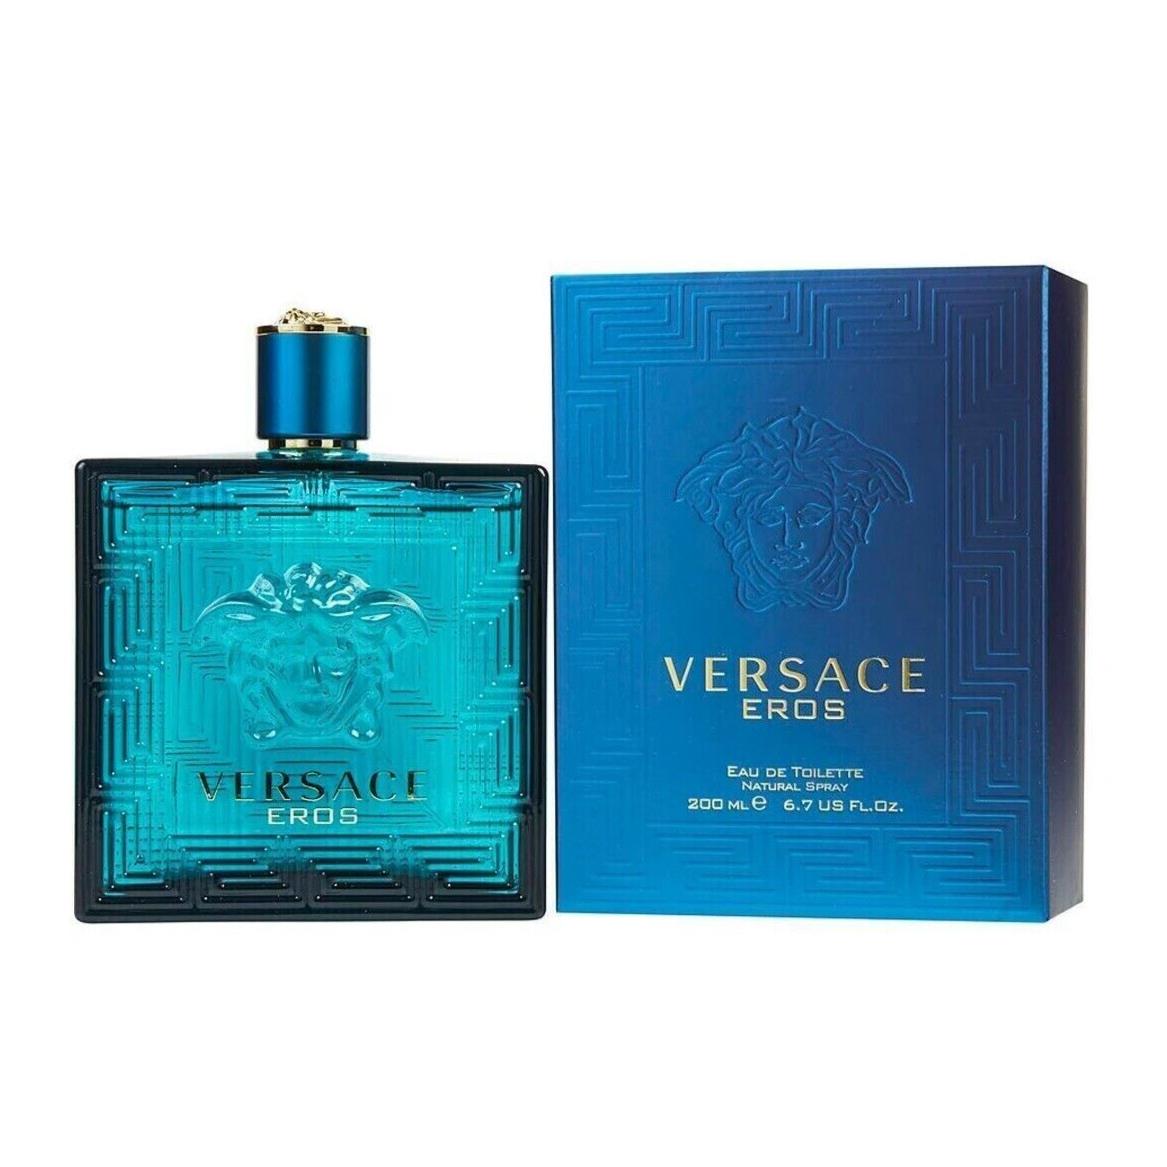 Versace Eros by Versace Eau de Toilette Spray For Men 6.7oz Box